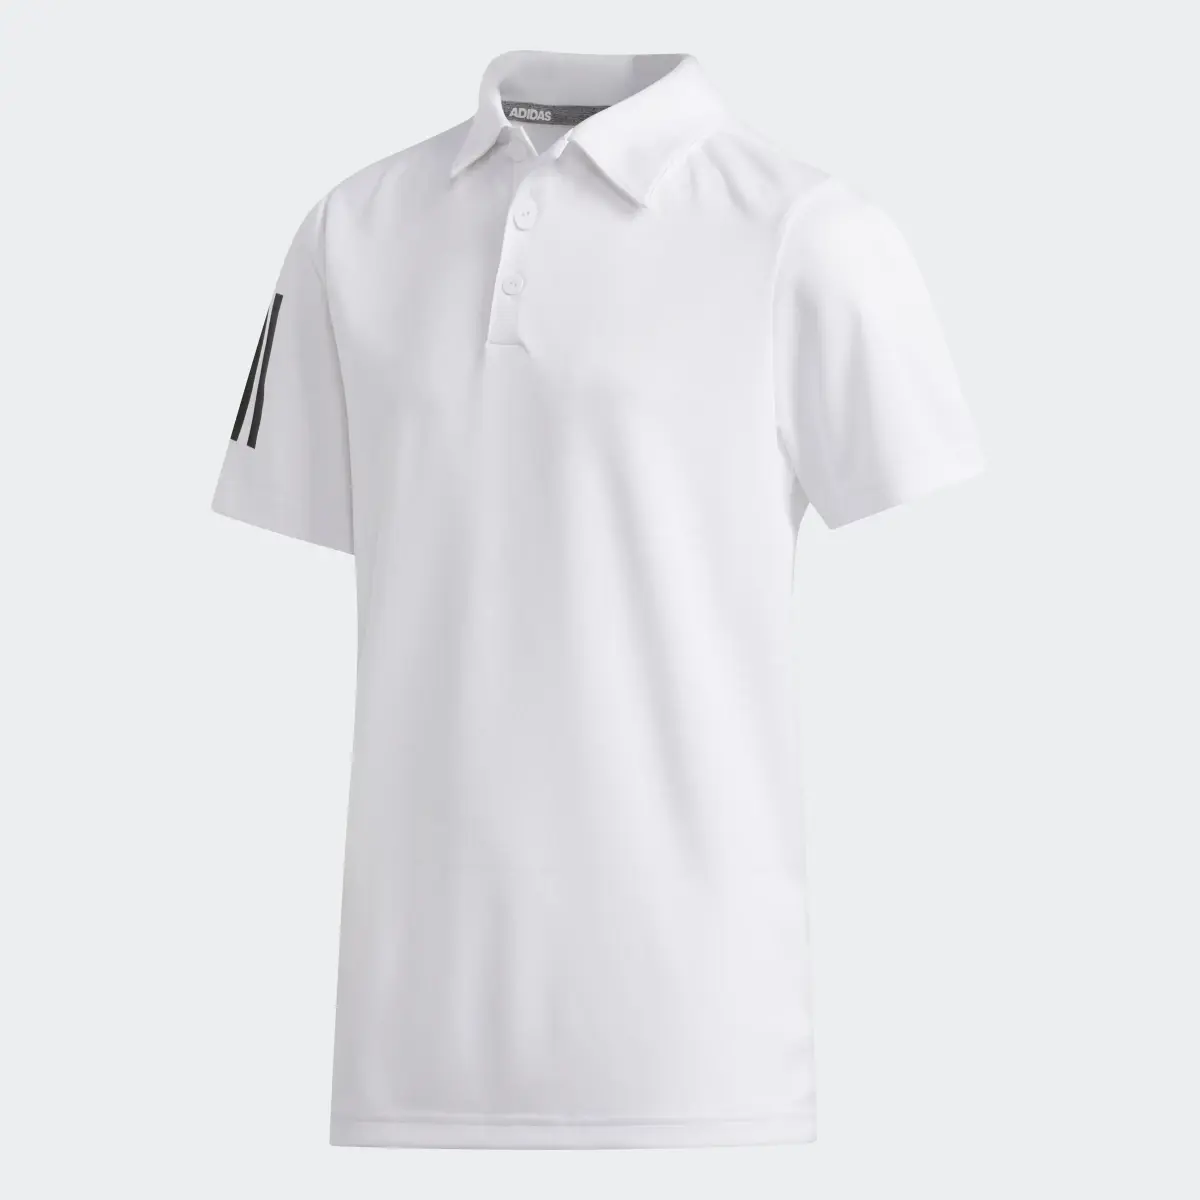 Adidas 3-Streifen Poloshirt. 1